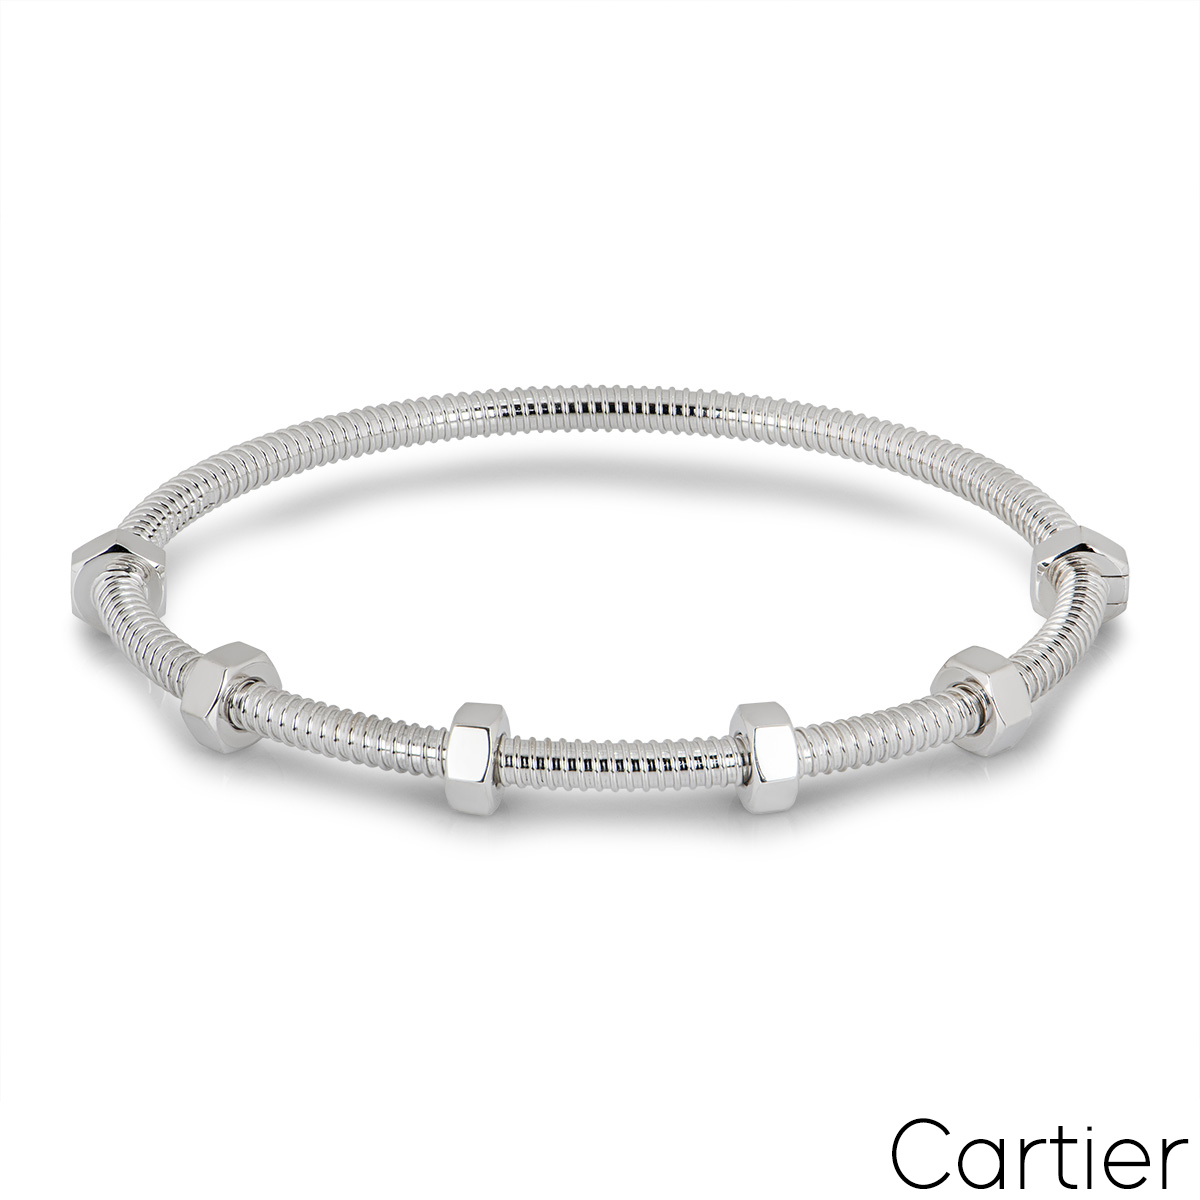 Cartier White Gold Ecrou De Cartier Bracelet Size 16 B6049616